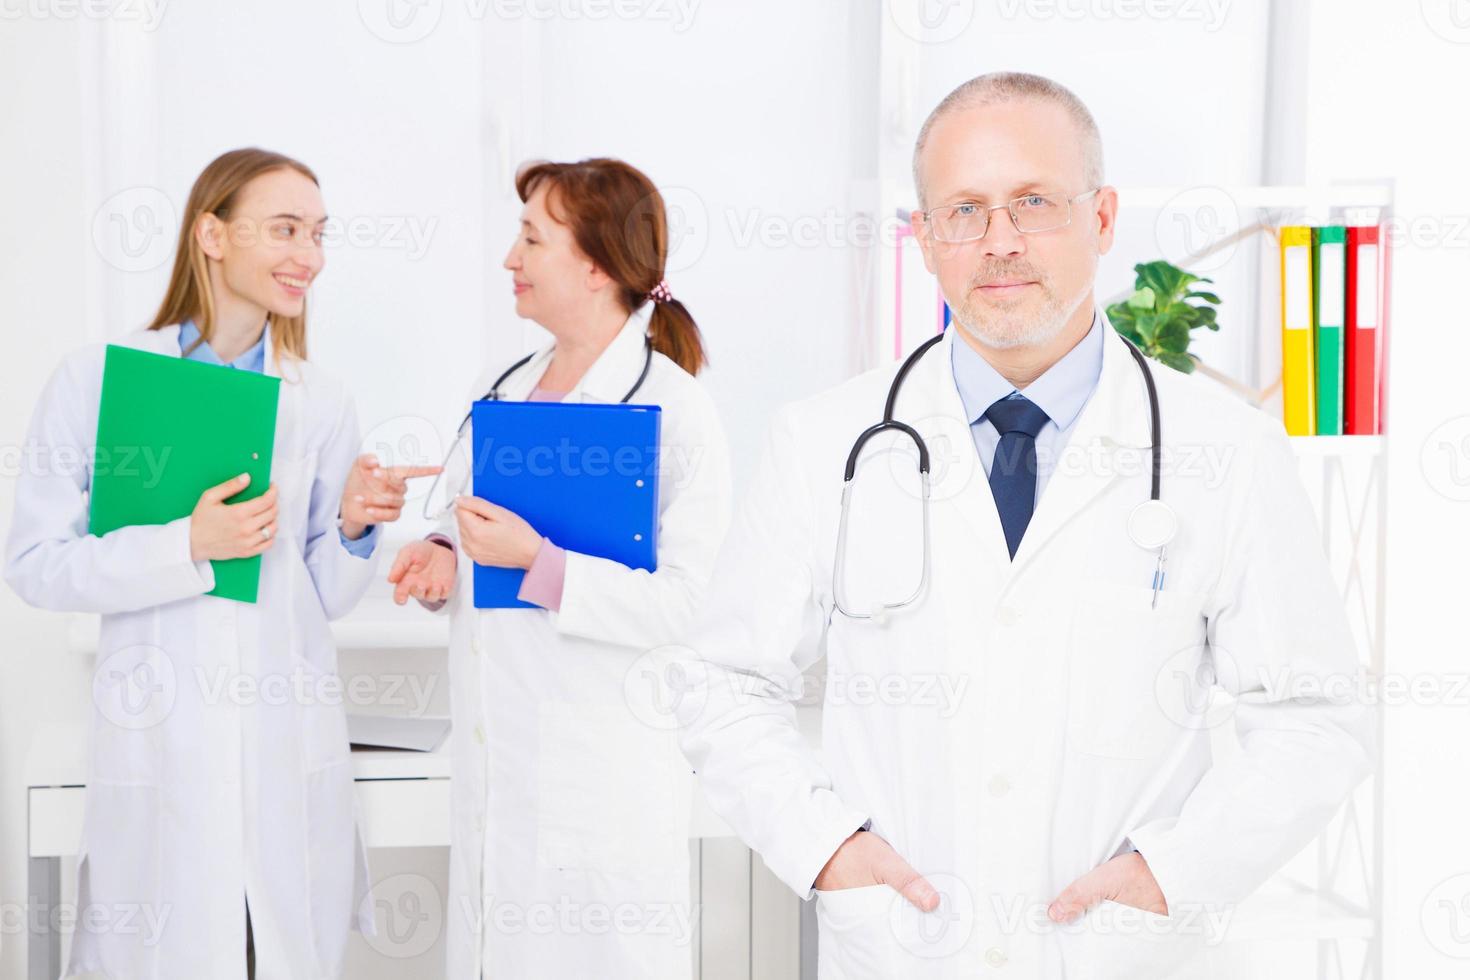 läkare poserar på kontoret, han bär ett stetoskop, medicinsk personal i bakgrunden. kvalitetsmedicin koncept. kopieringsutrymme foto